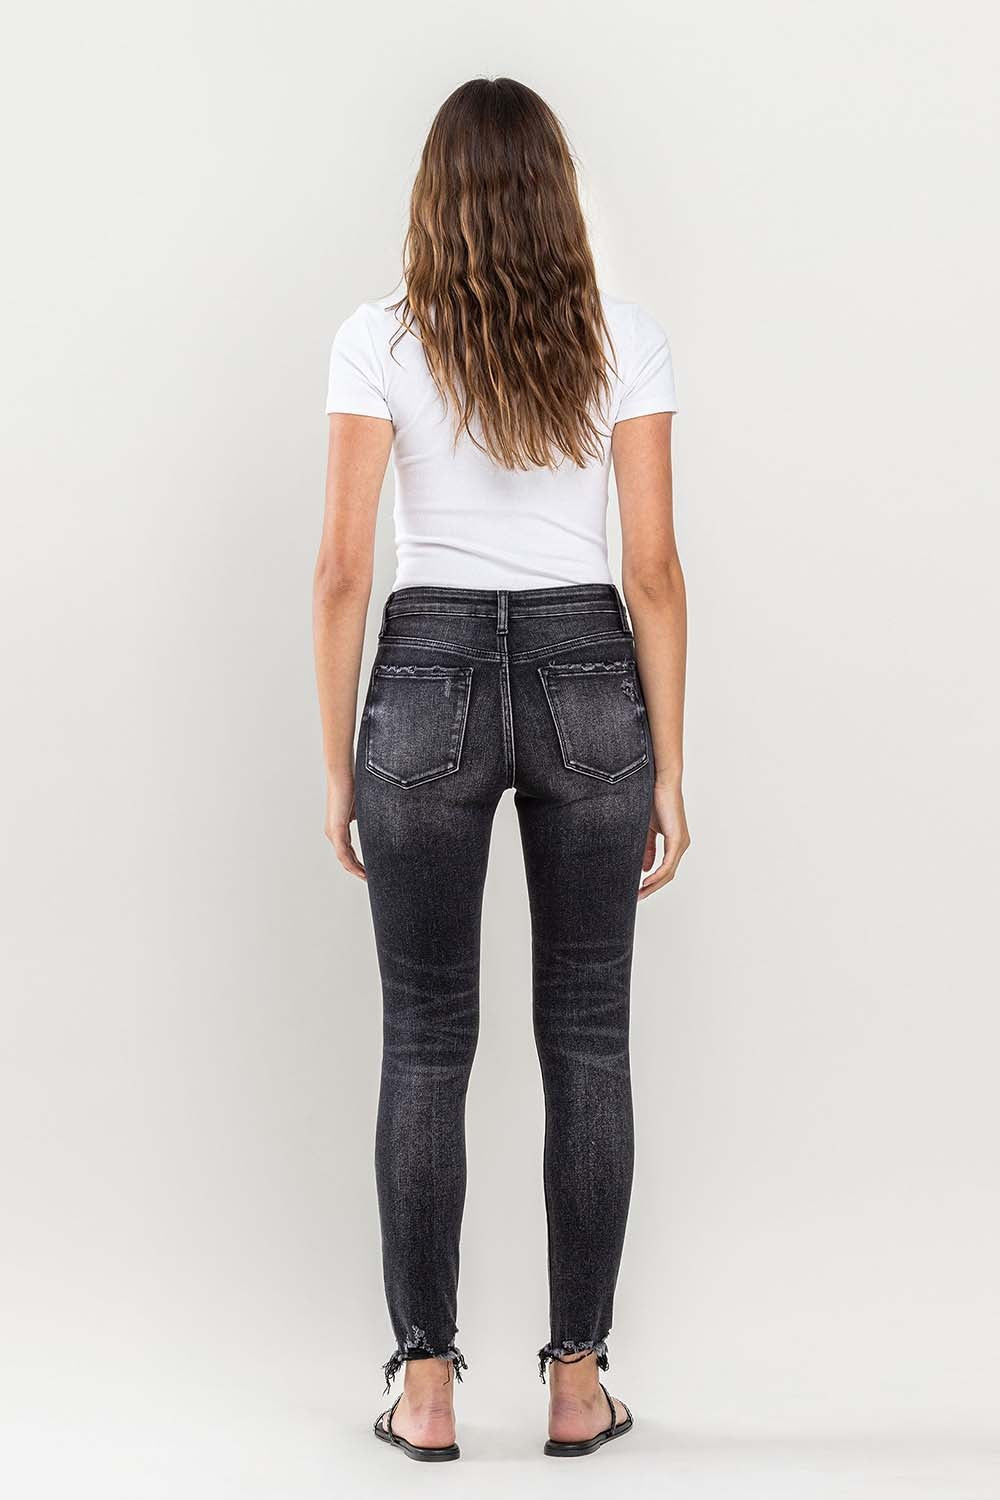 Lovervet Ashe Cropped Skinny Jeans